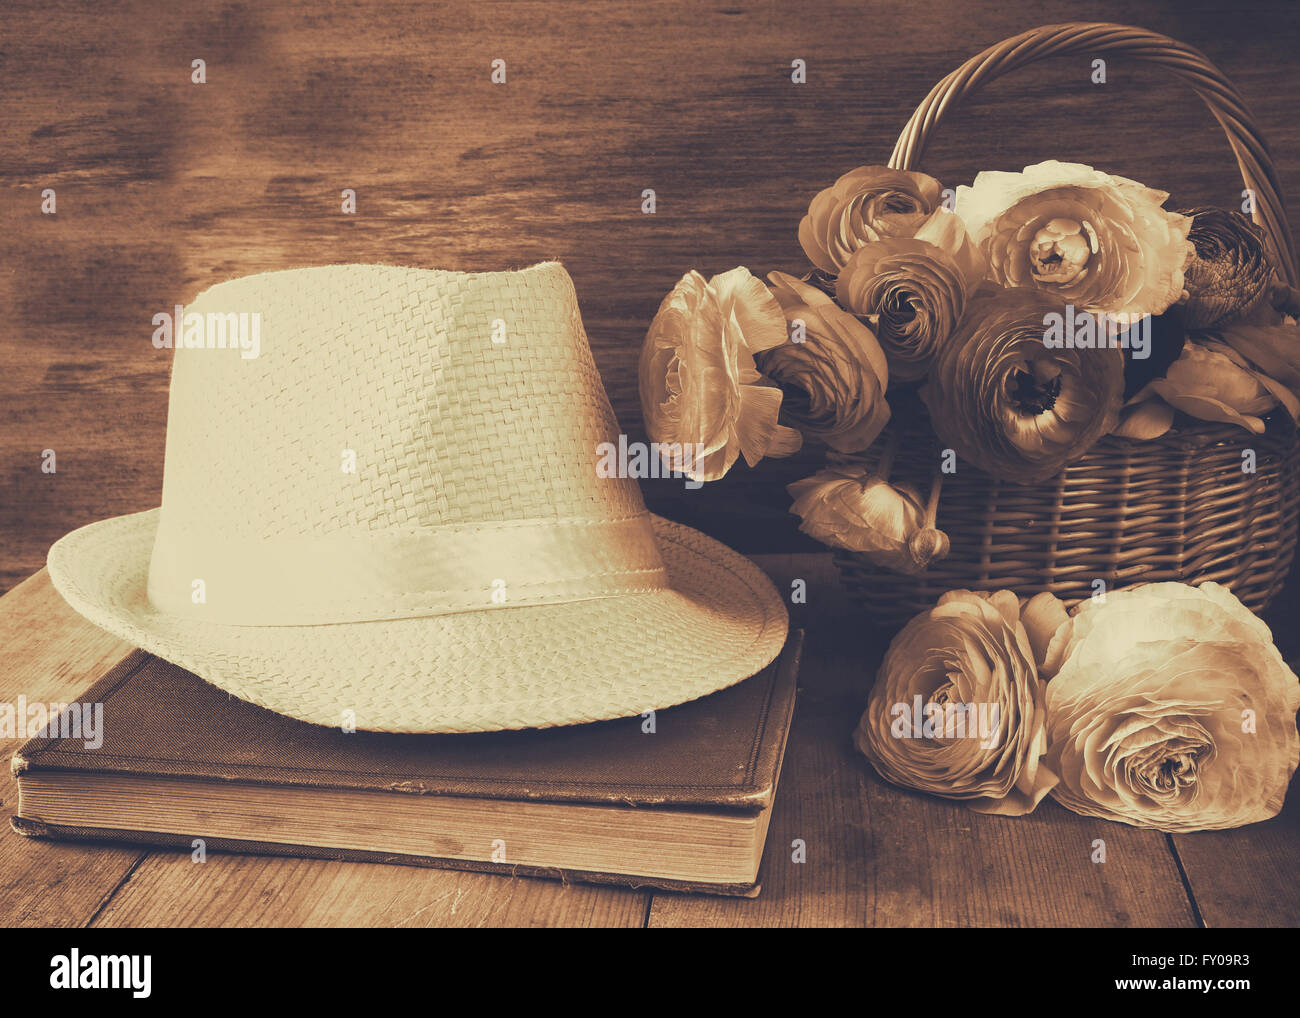 Fedora-Hut neben altes Buch und Blumen auf Holztisch. Sepia Jahrgang gefiltert Stockfoto